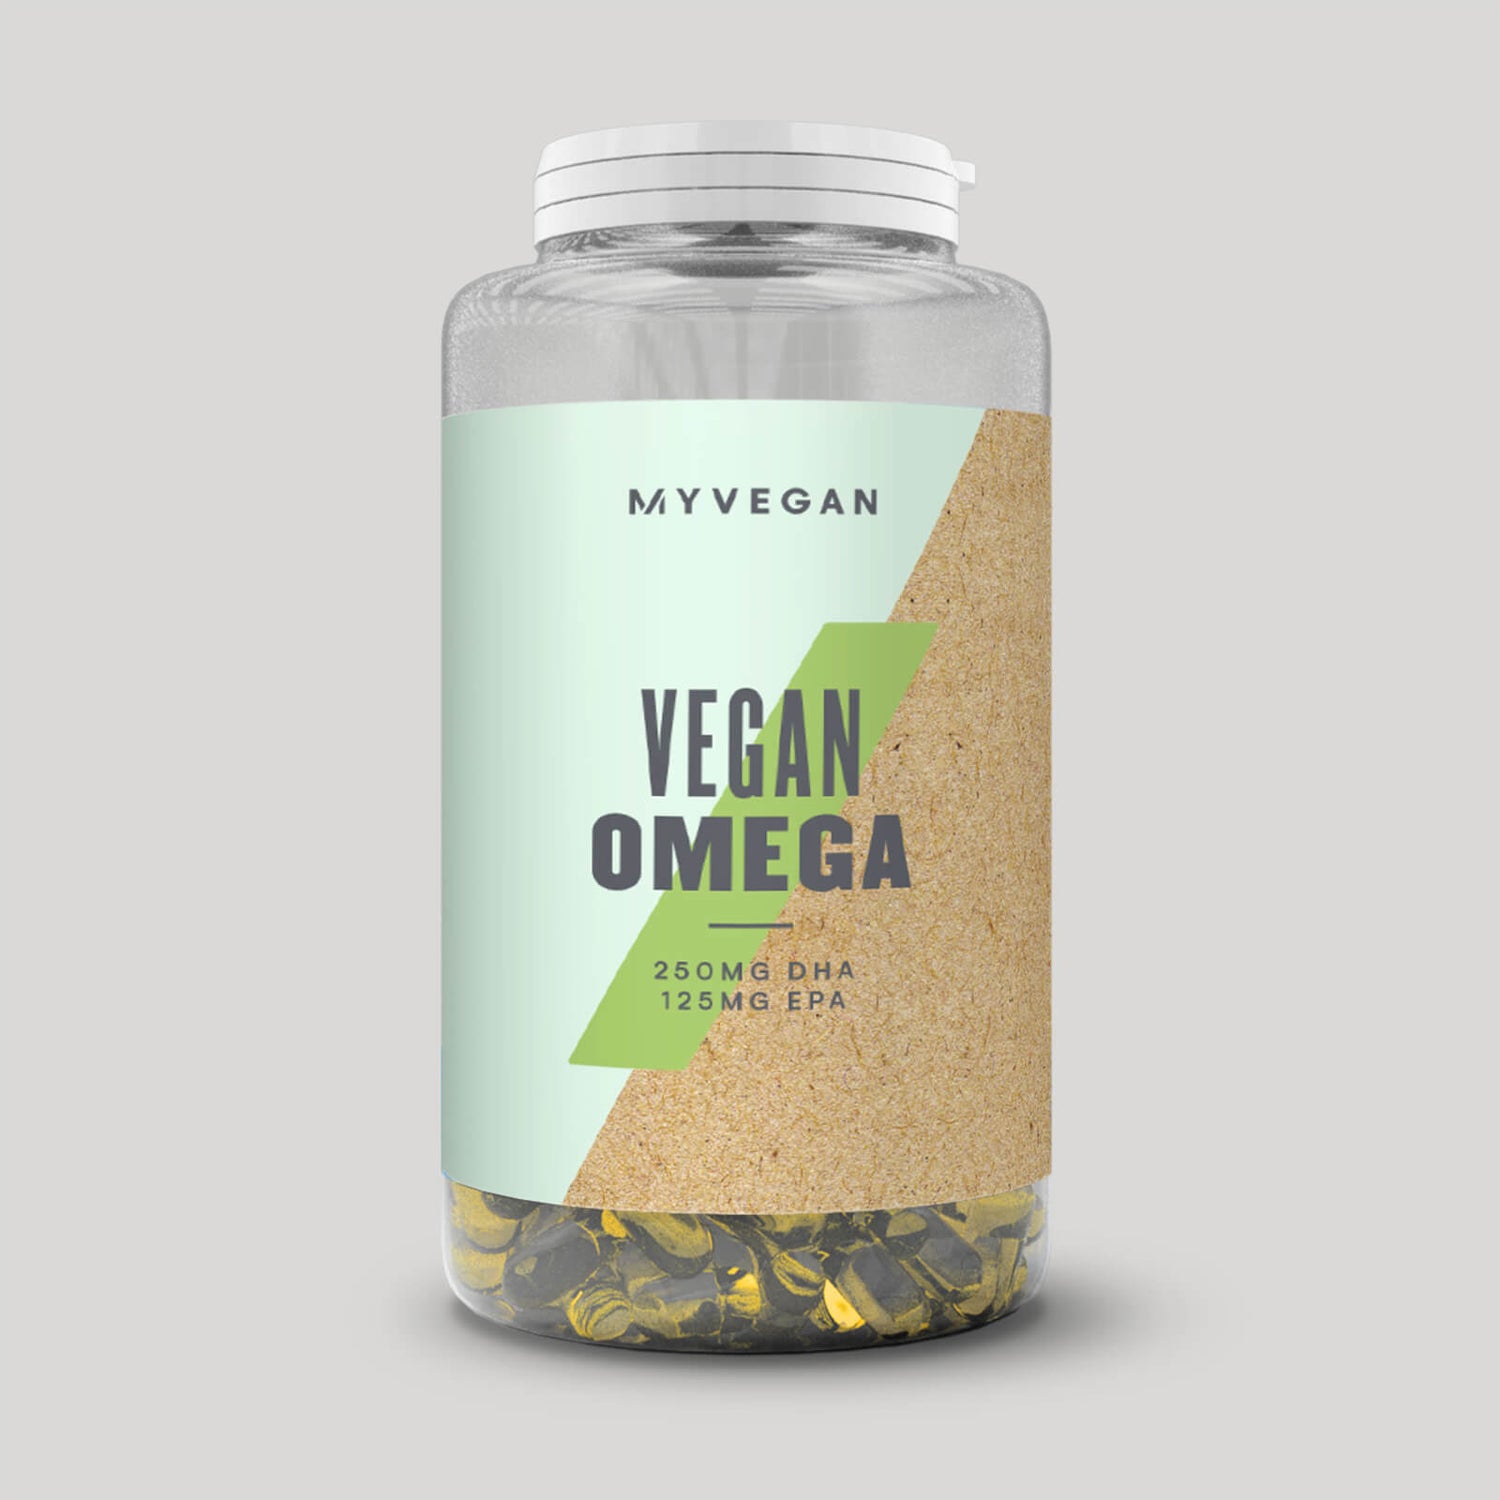 Vegan Omega 3 Plus - 90κάψουλες